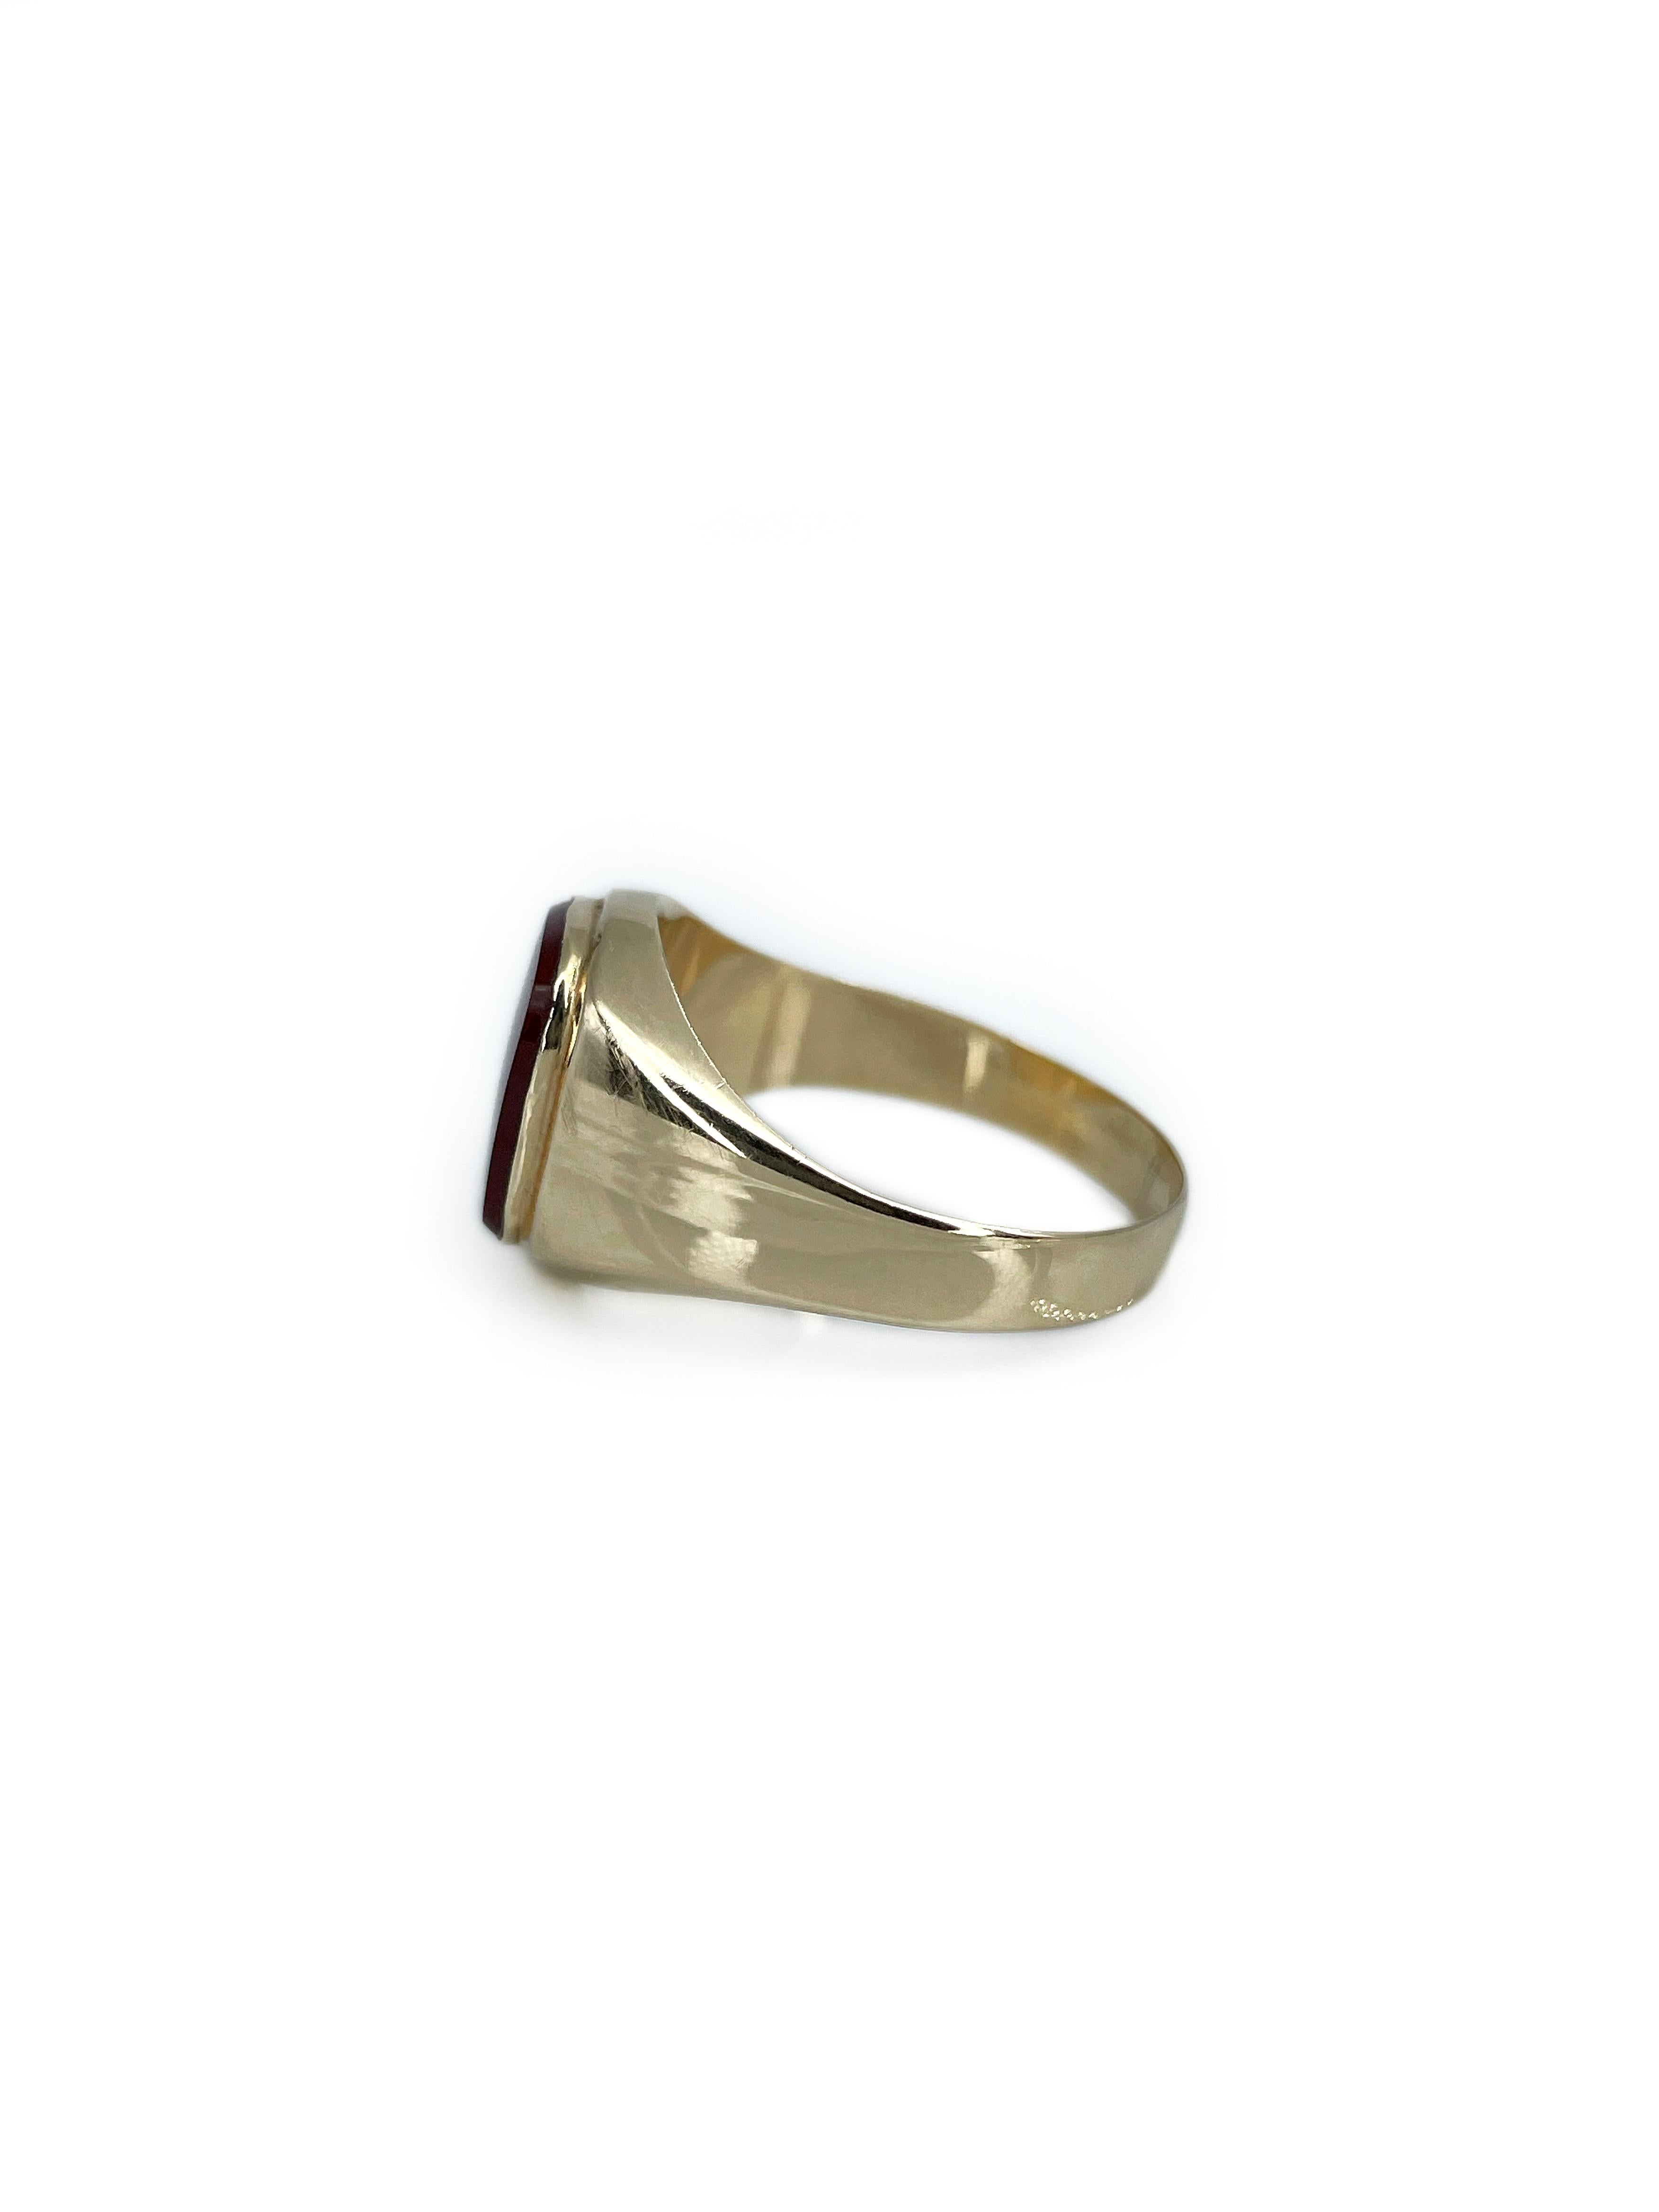 Vintage 14 Karat Yellow Gold Carnelian Rectangle Signet Ring 1